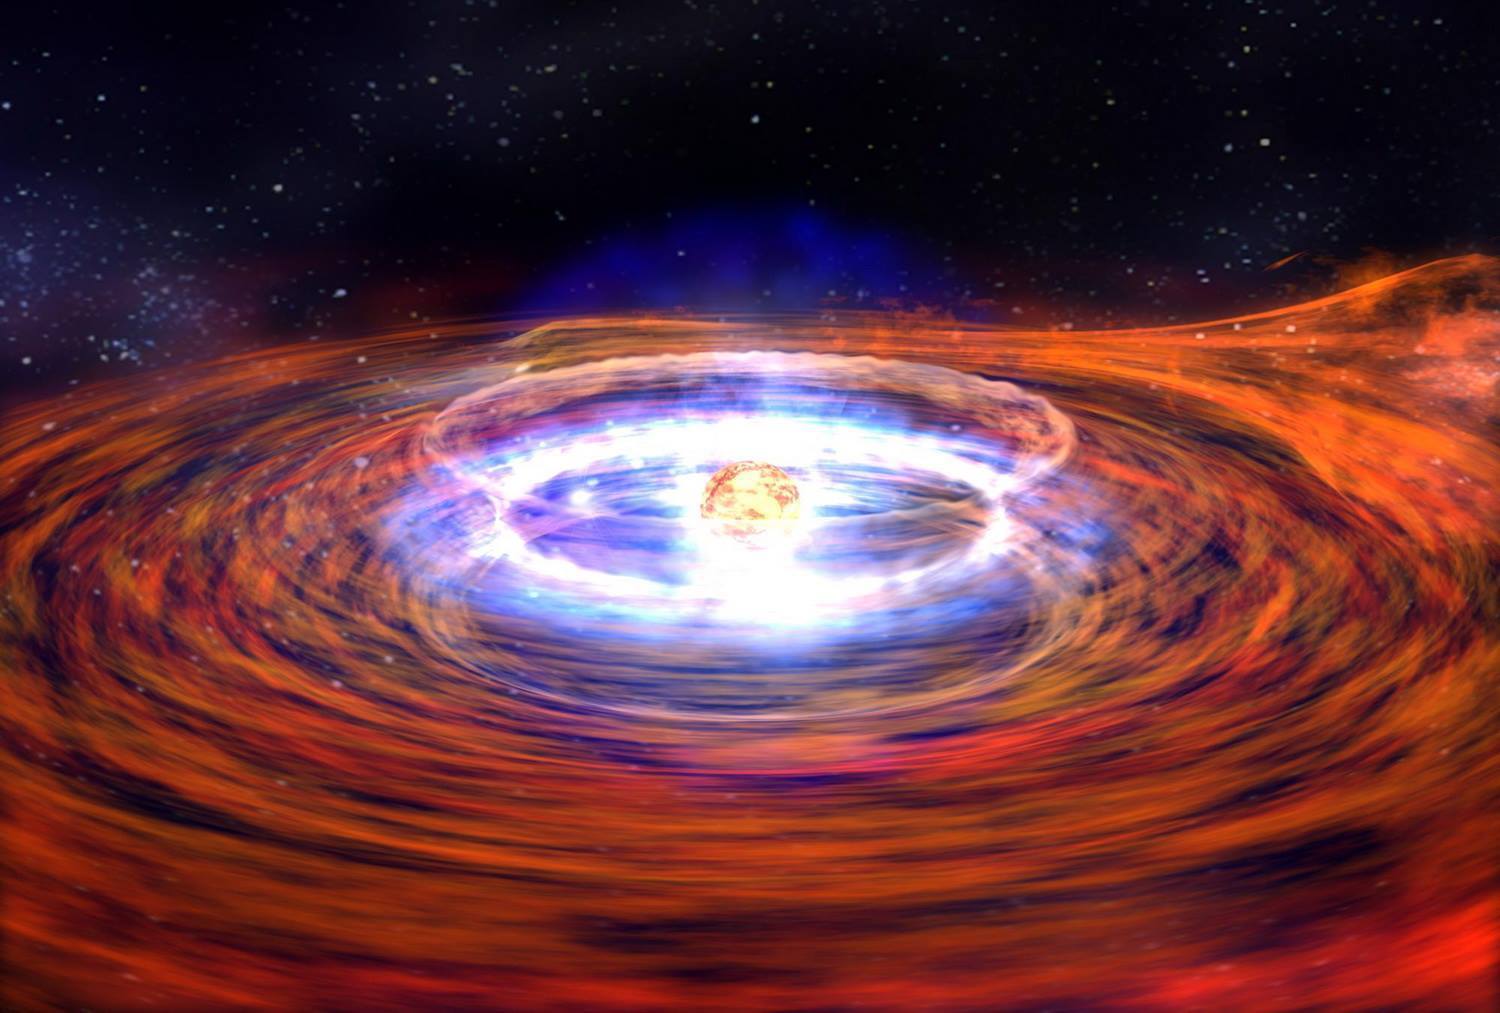 Ομάδα αστρονόμων ανακάλυψε το βαρύτερο και πυκνότερο άστρο νετρονίων – Είναι μεγαλύτερο και από τον Ήλιο